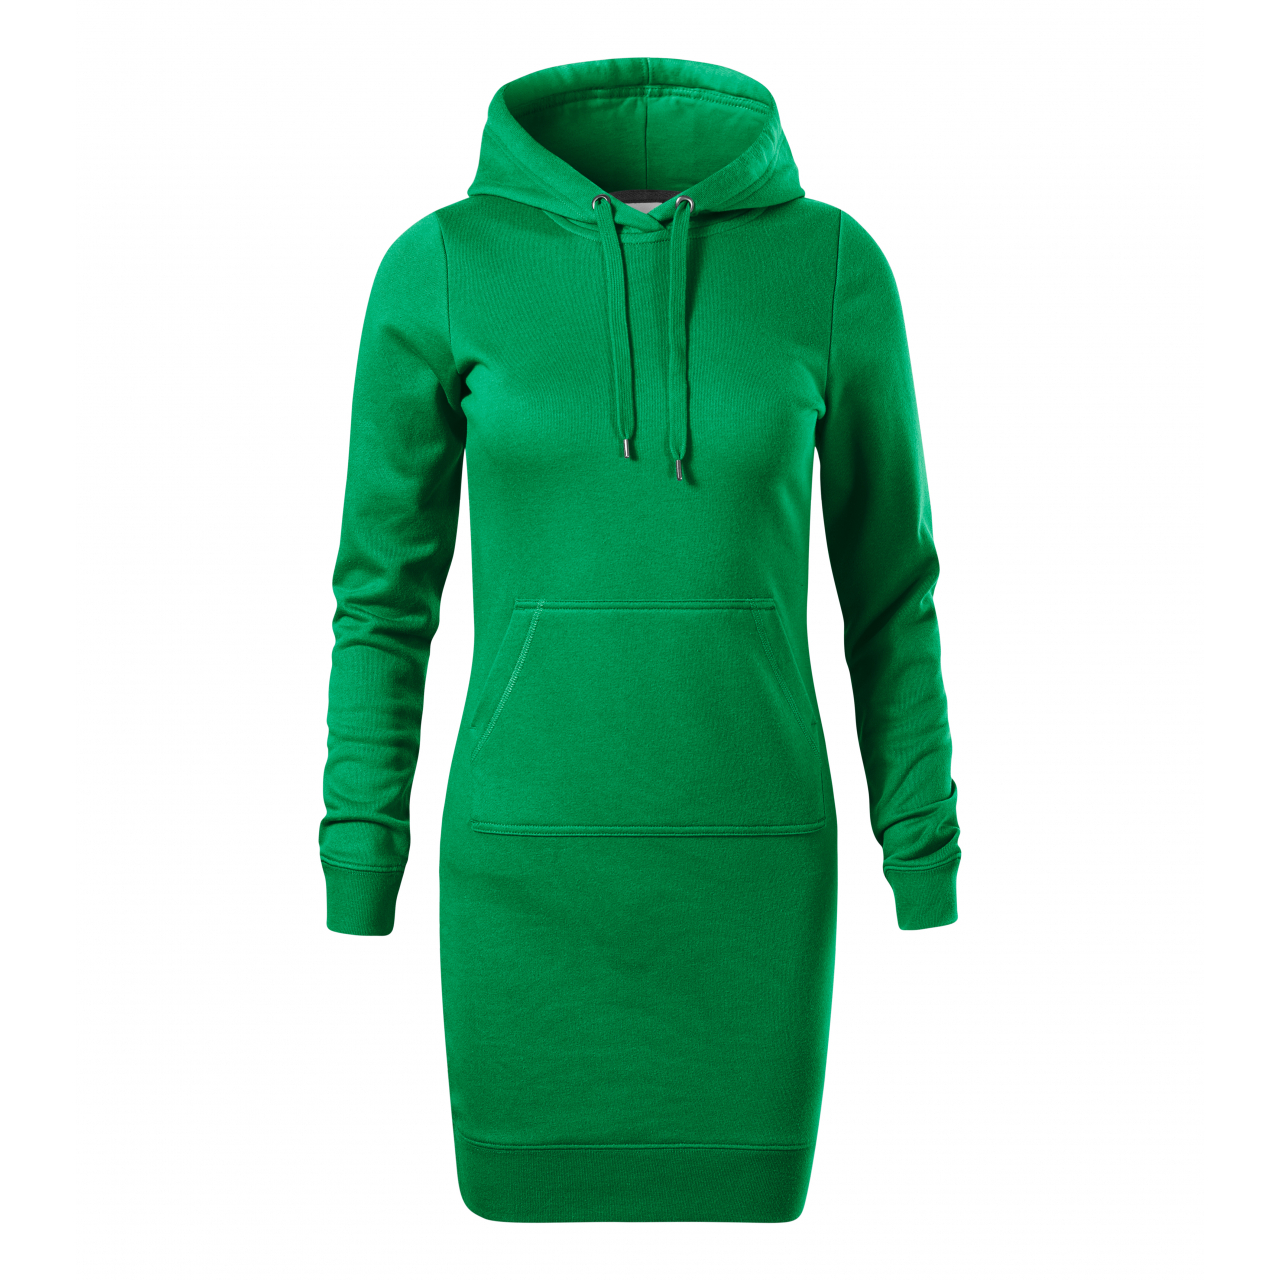 Šaty dámské Malfini Snap - zelené, S